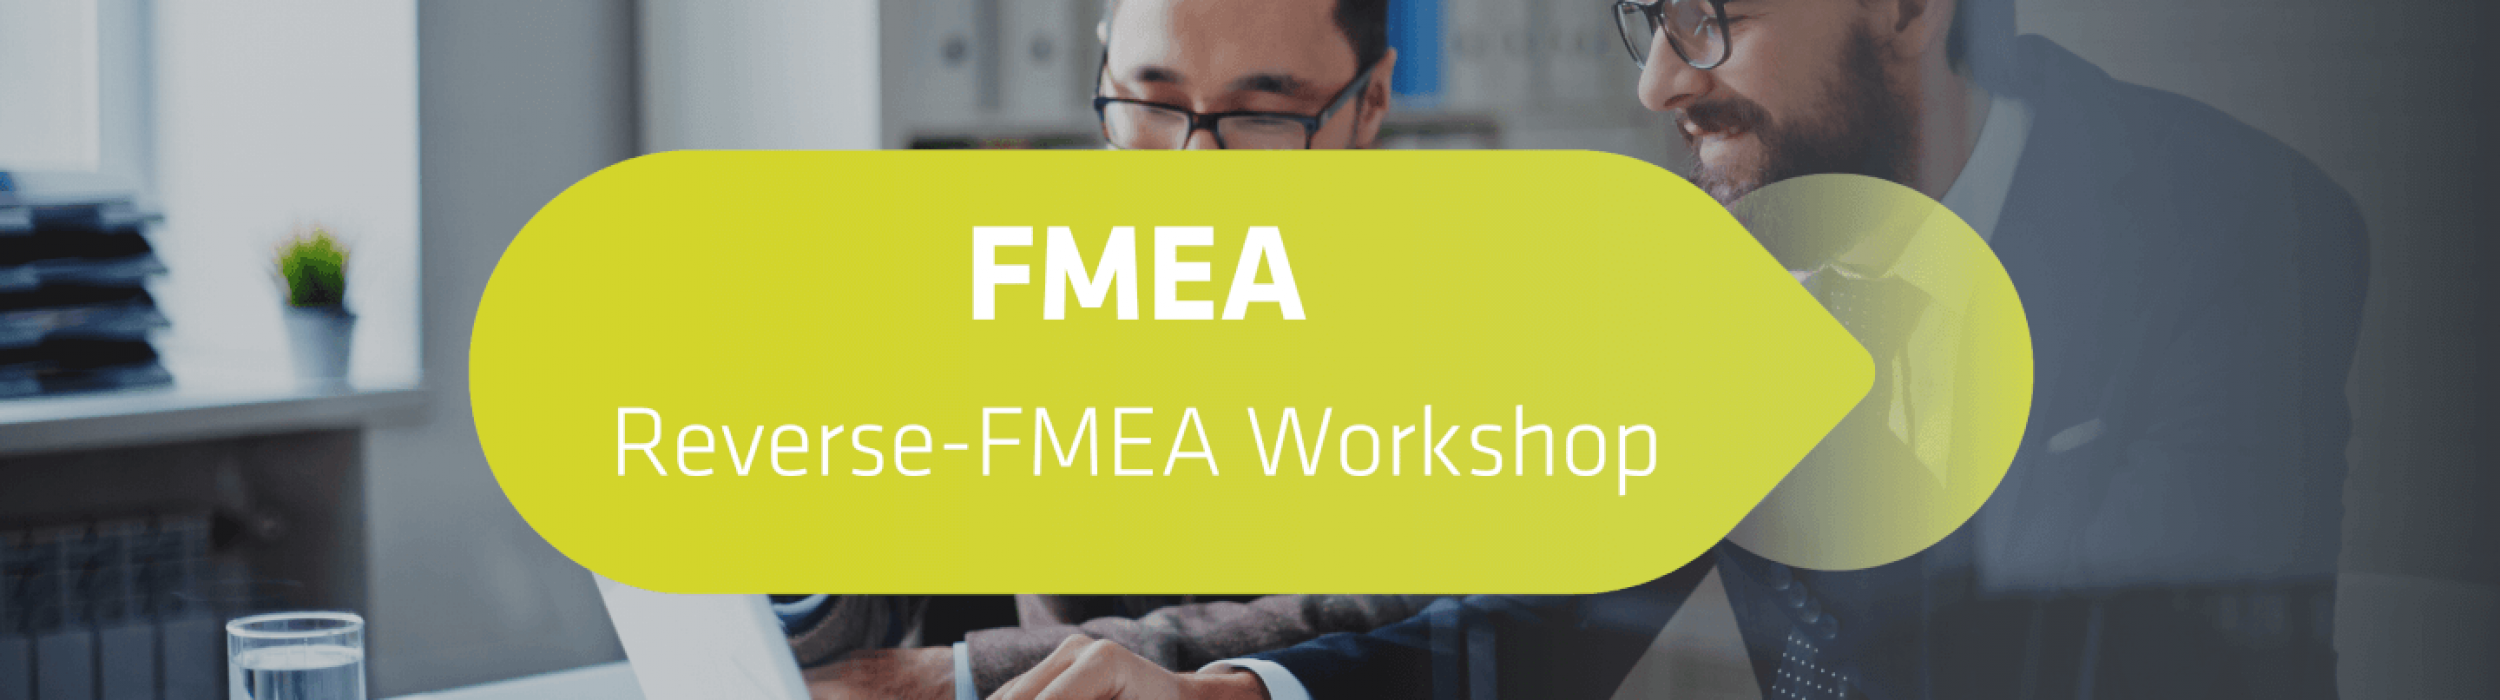 FMEA Reverse-FMEA Workshop